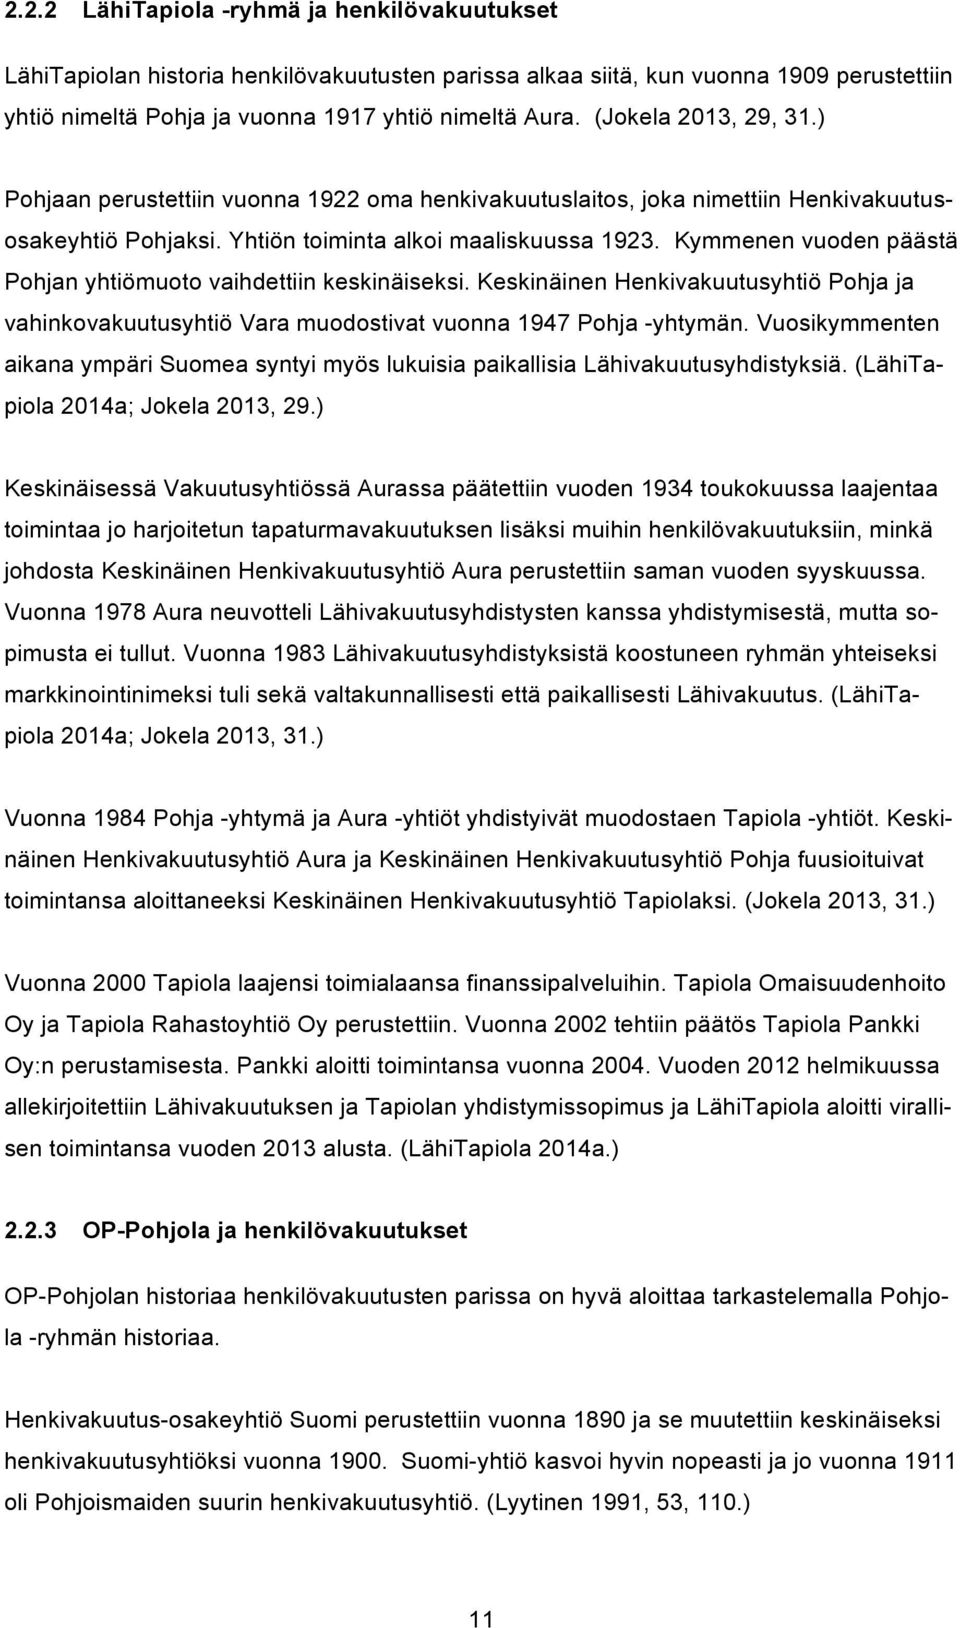 Kymmenen vuoden päästä Pohjan yhtiömuoto vaihdettiin keskinäiseksi. Keskinäinen Henkivakuutusyhtiö Pohja ja vahinkovakuutusyhtiö Vara muodostivat vuonna 1947 Pohja -yhtymän.